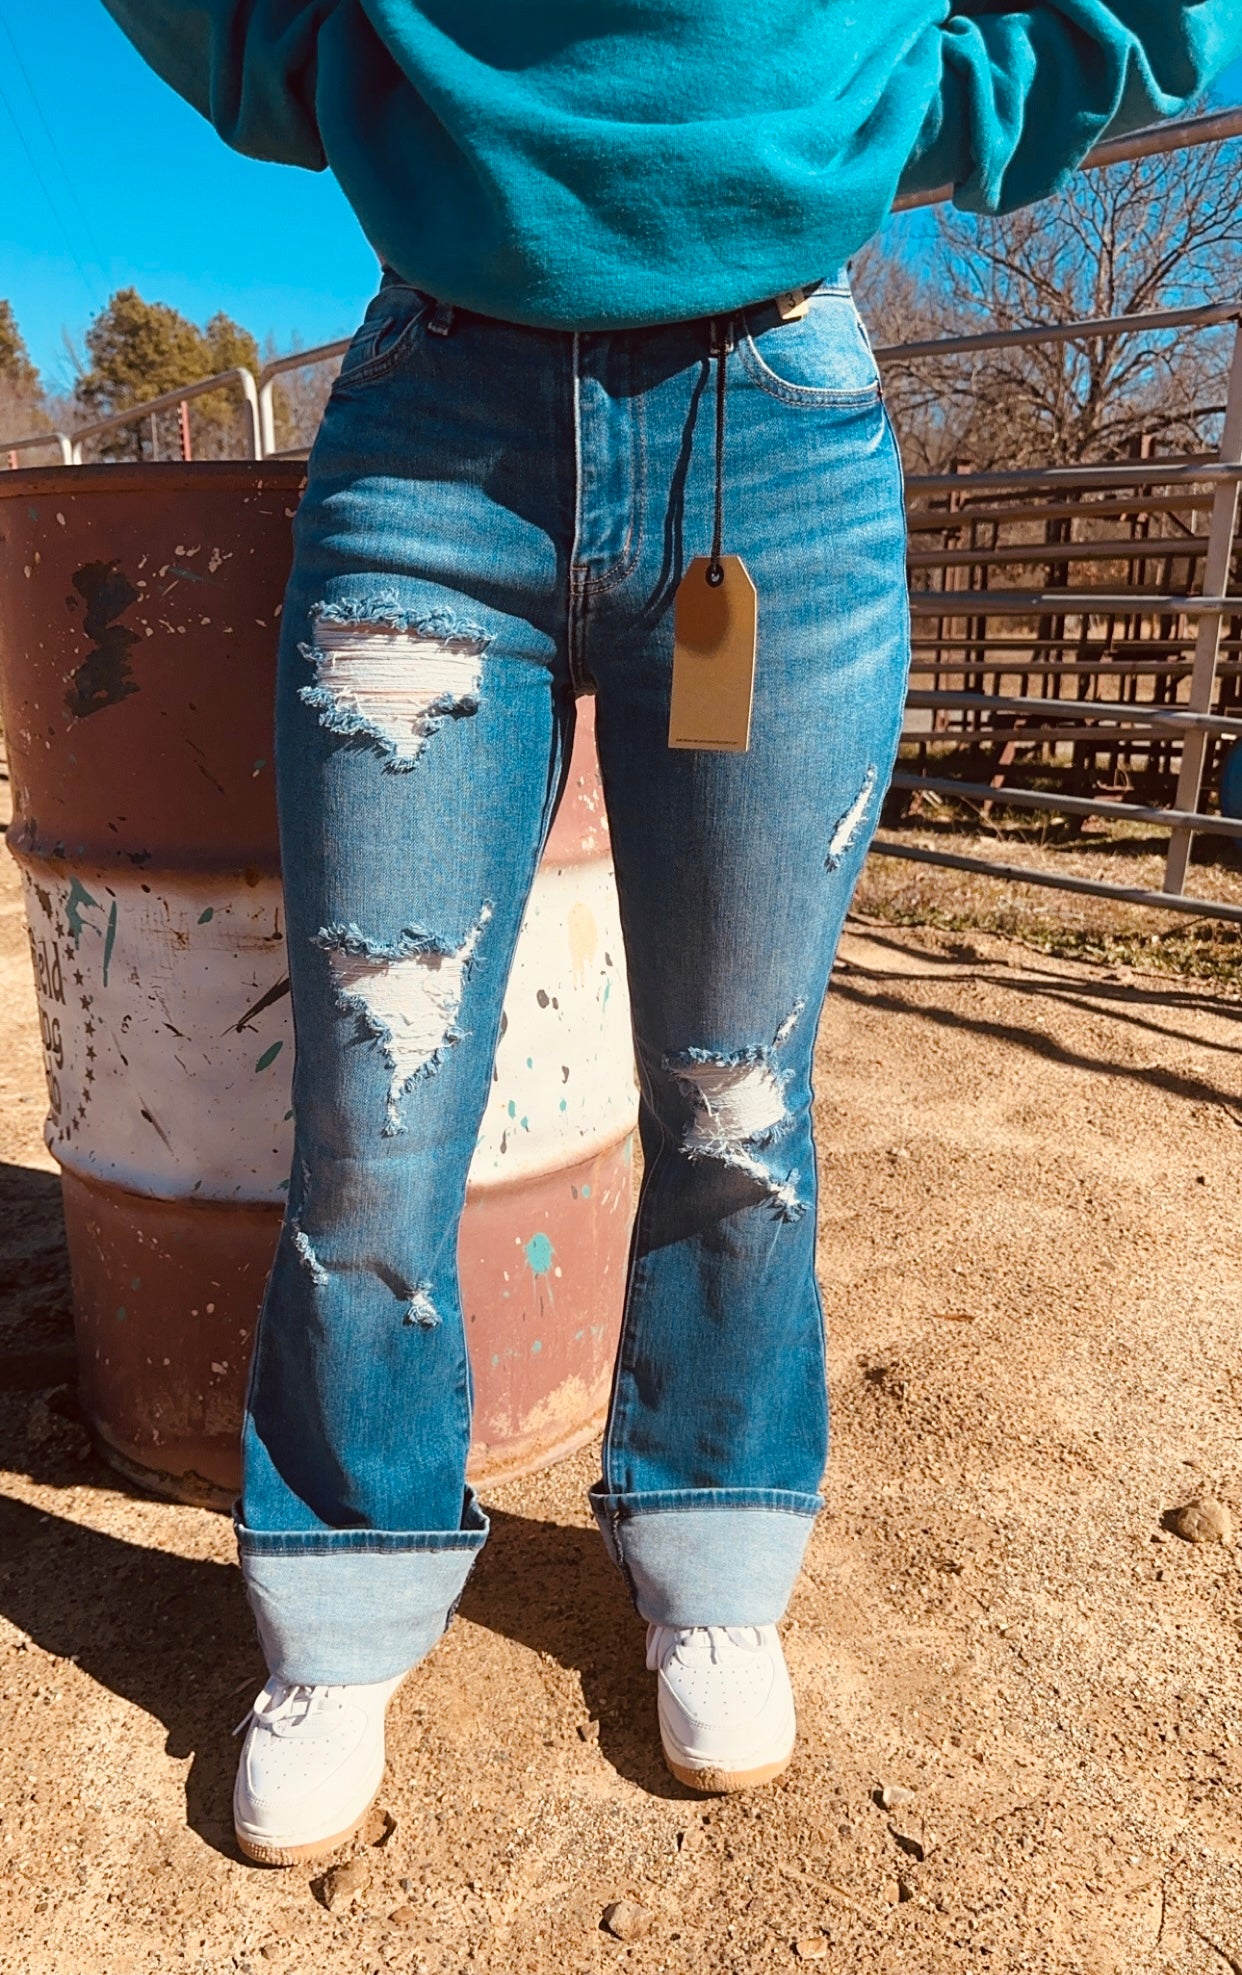 The Loretta flare jeans